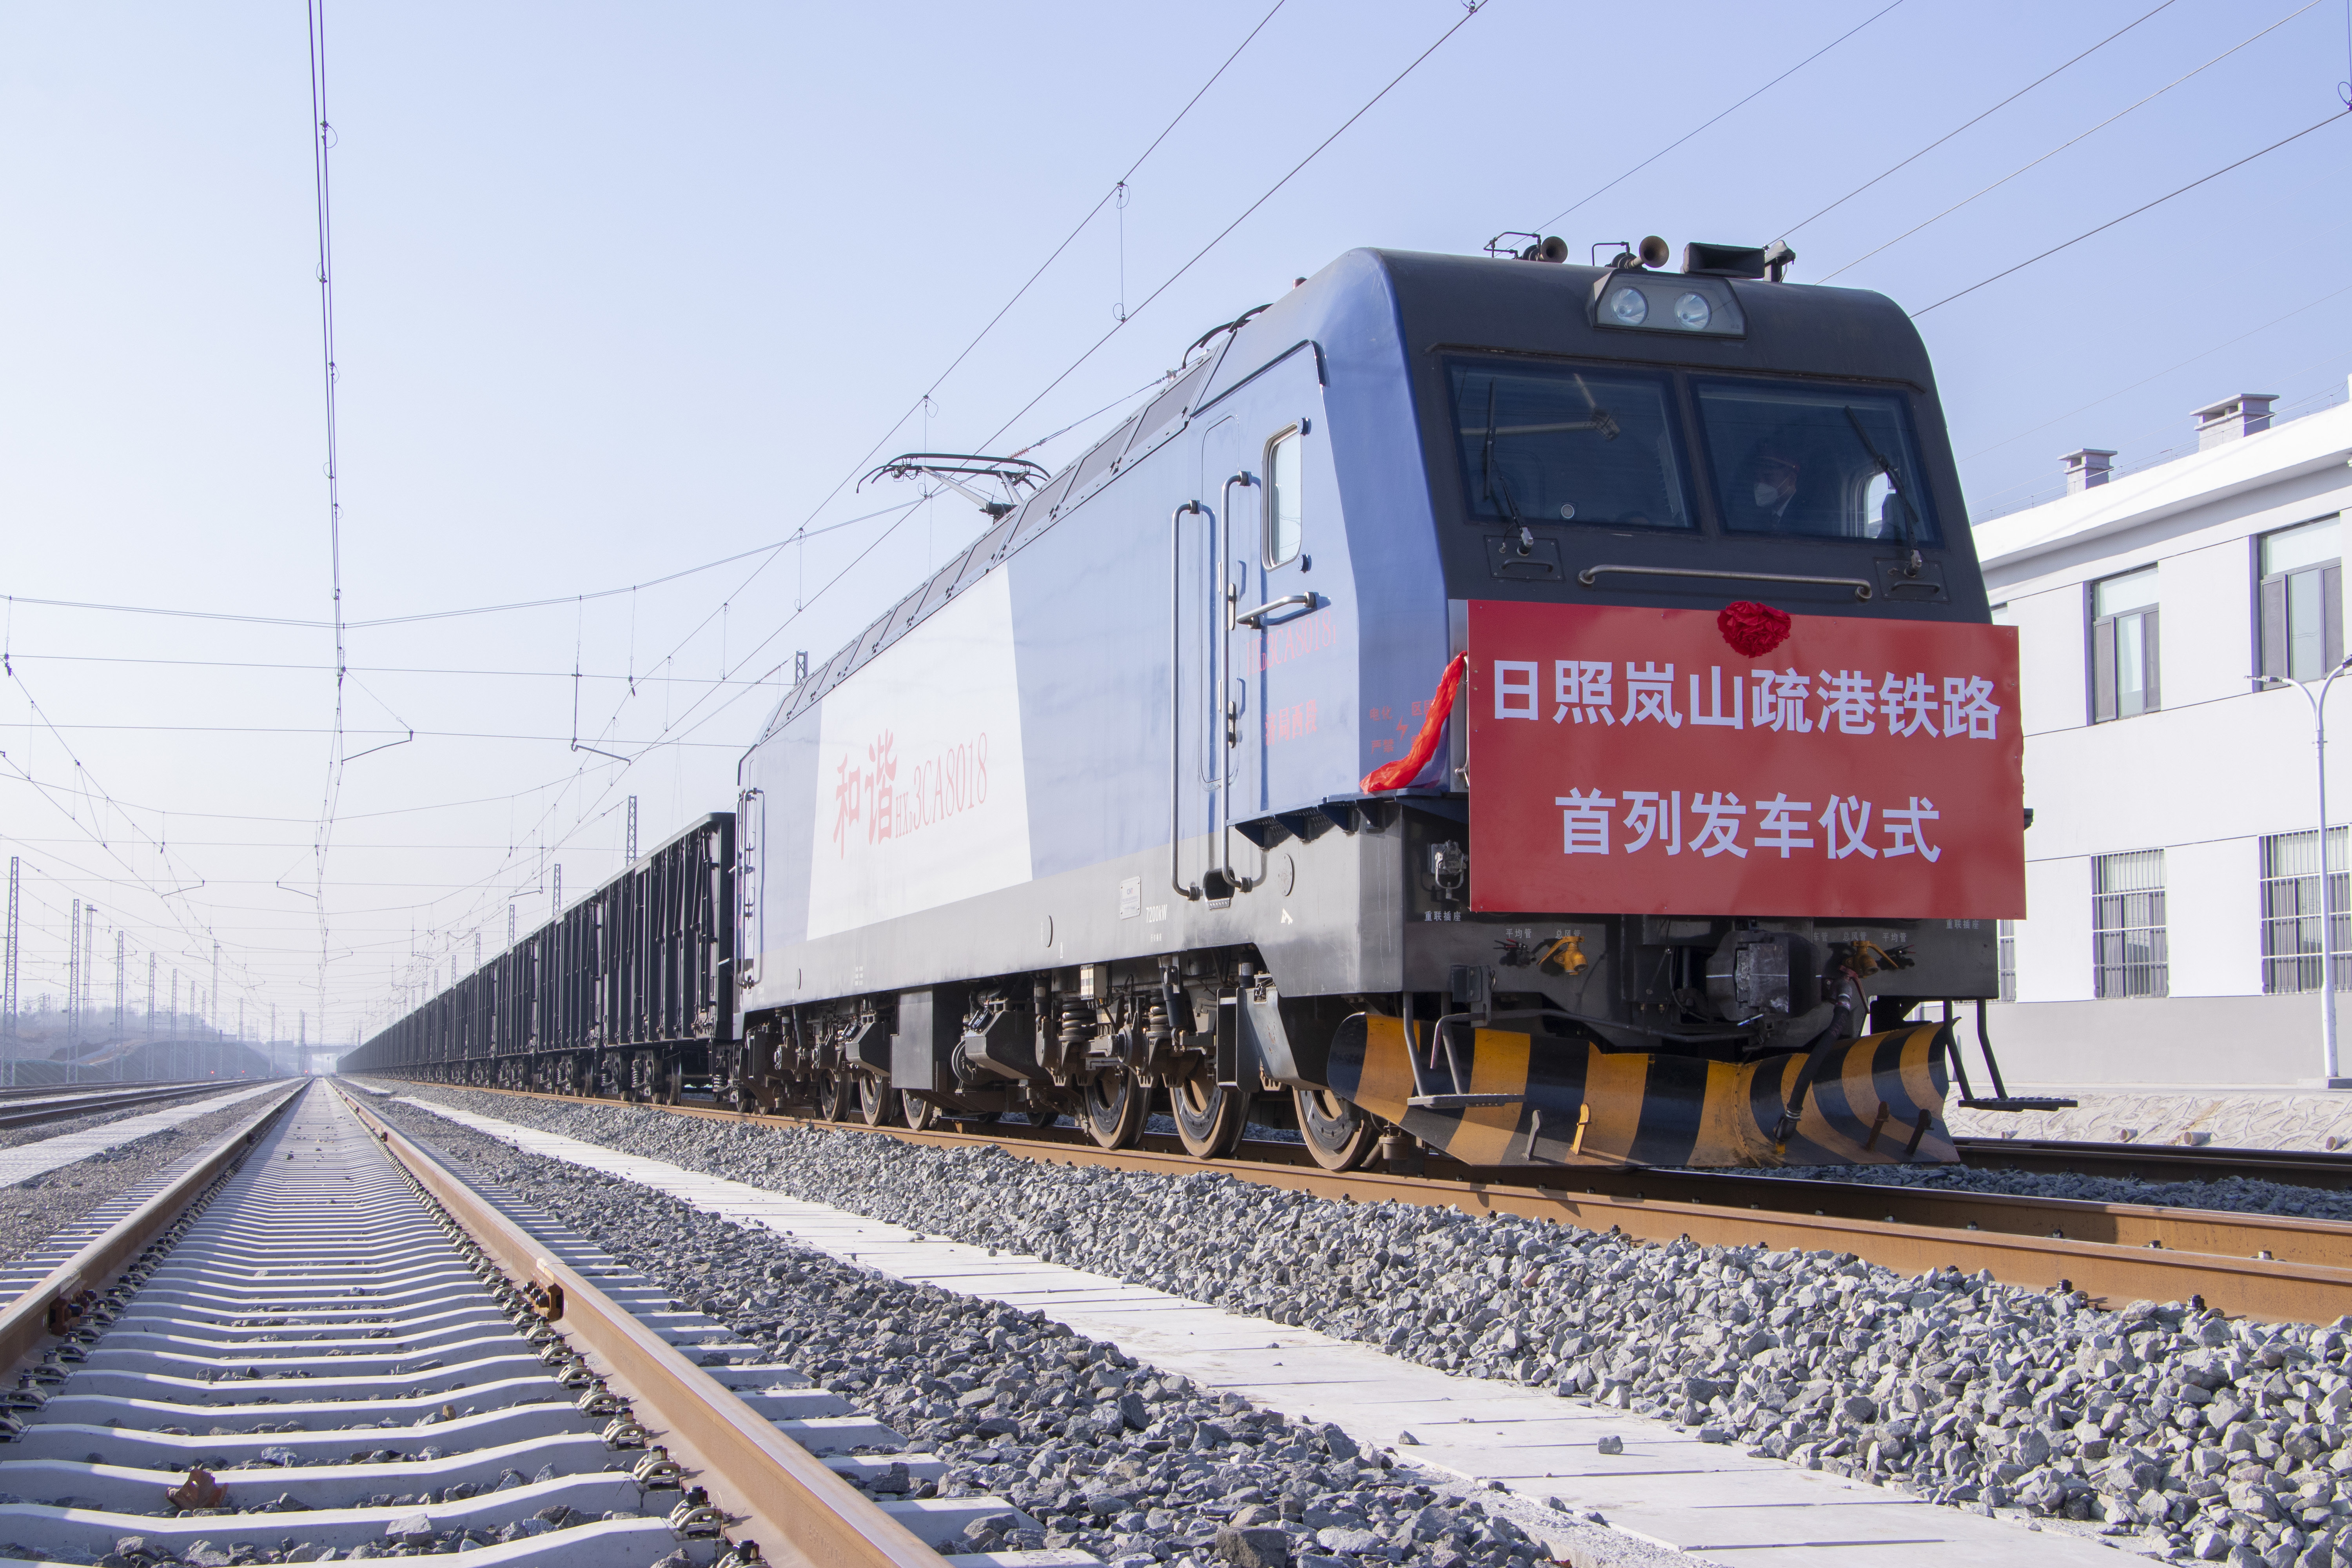 12月29日,日照岚山疏港铁路正式开通运营林坤摄